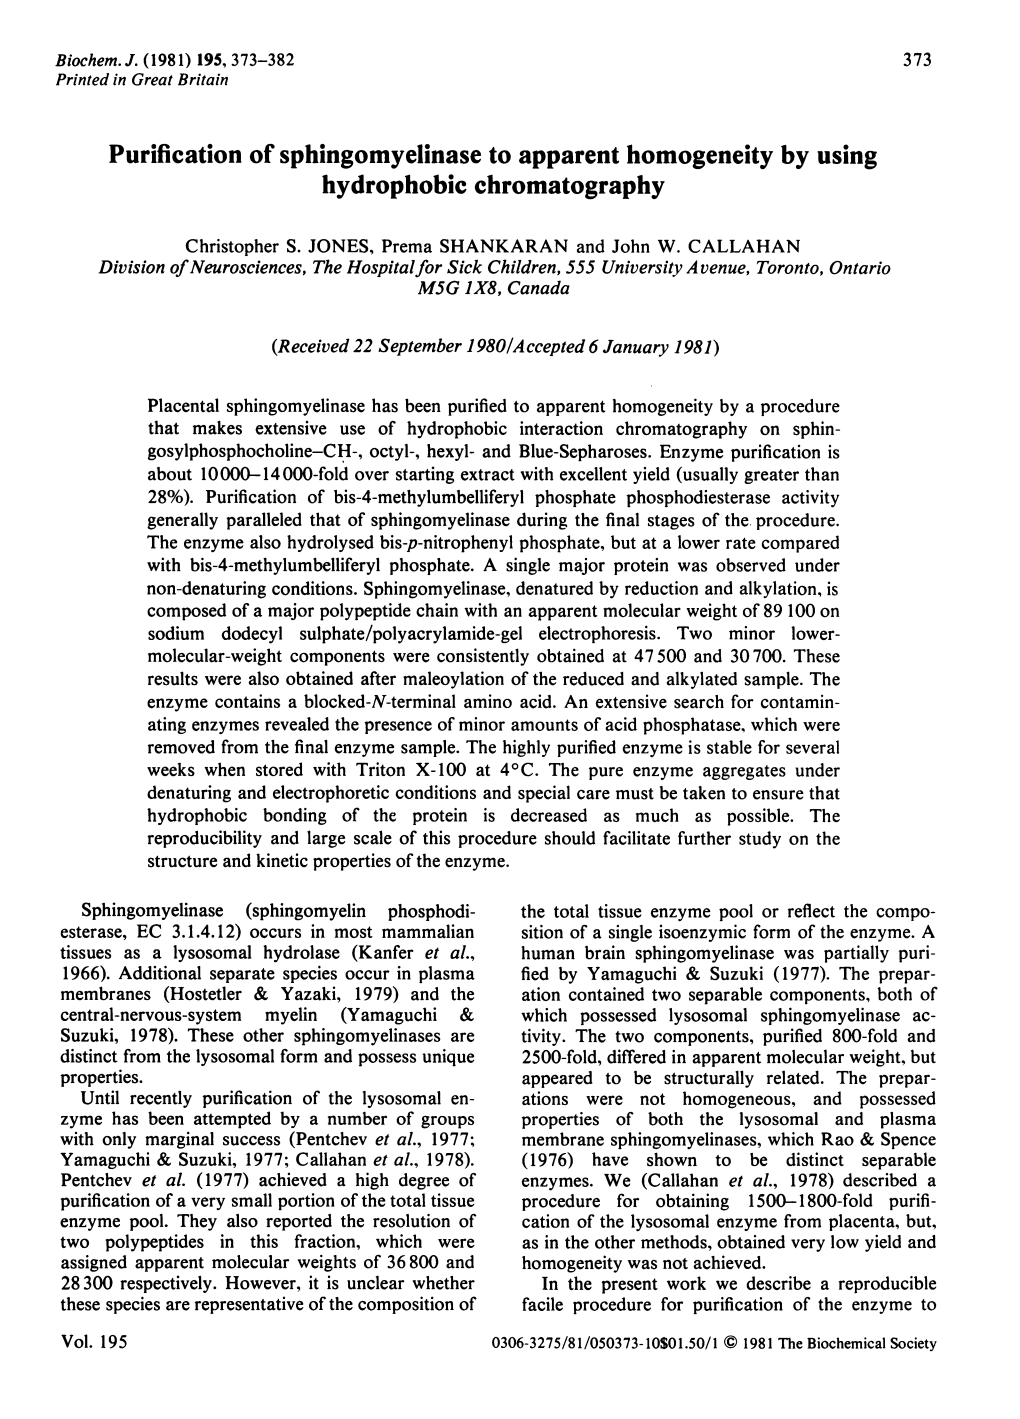 Purification of Sphingomyelinase to Apparent Homogeneity by Using Hydrophobic Chromatography